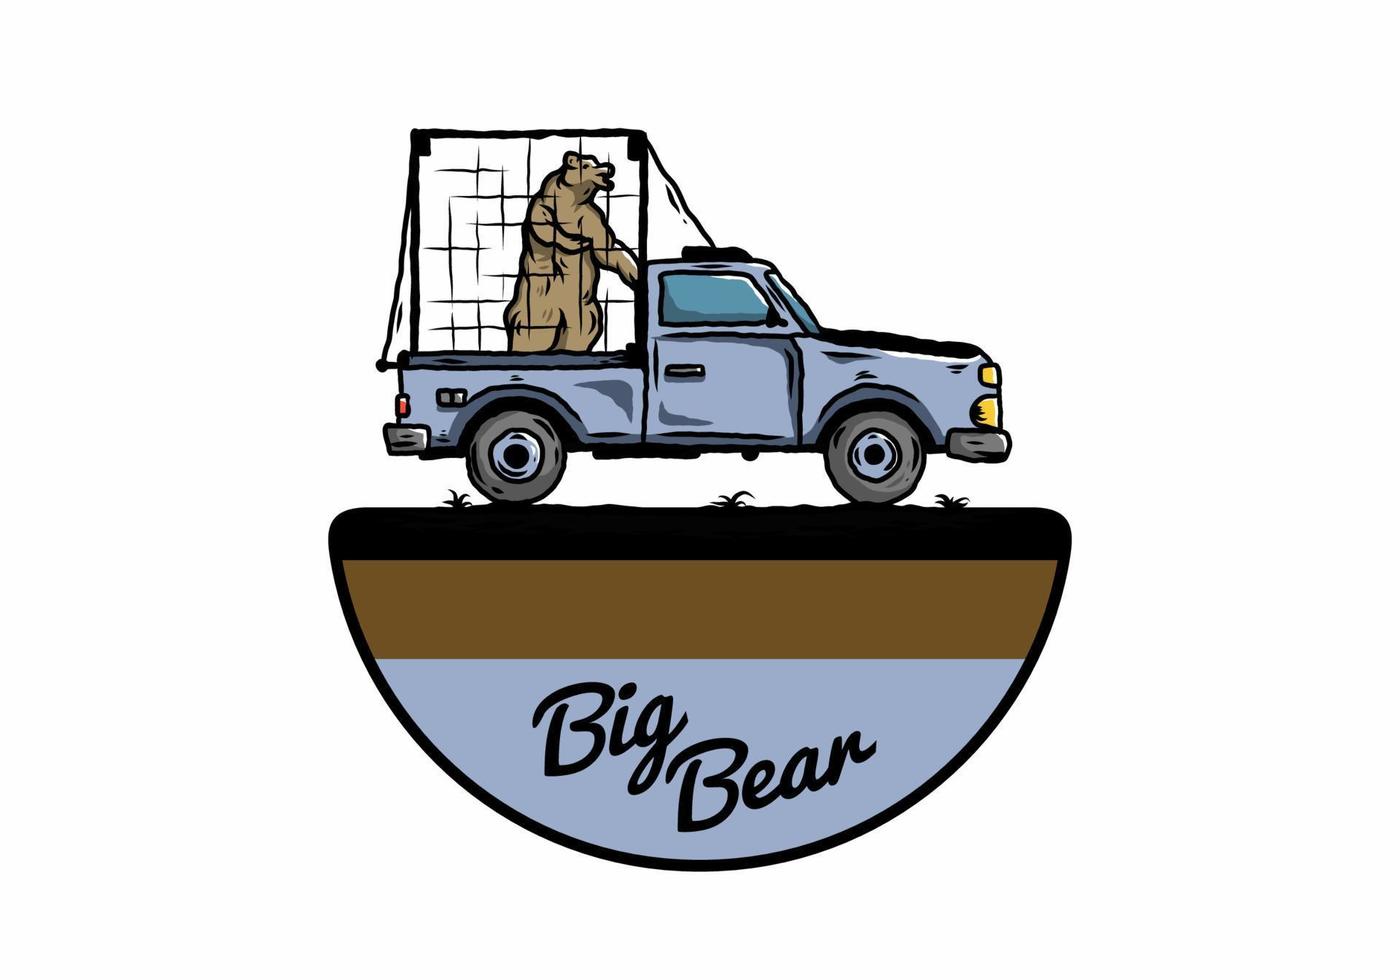 grote beer in kooi op autoillustratie vector